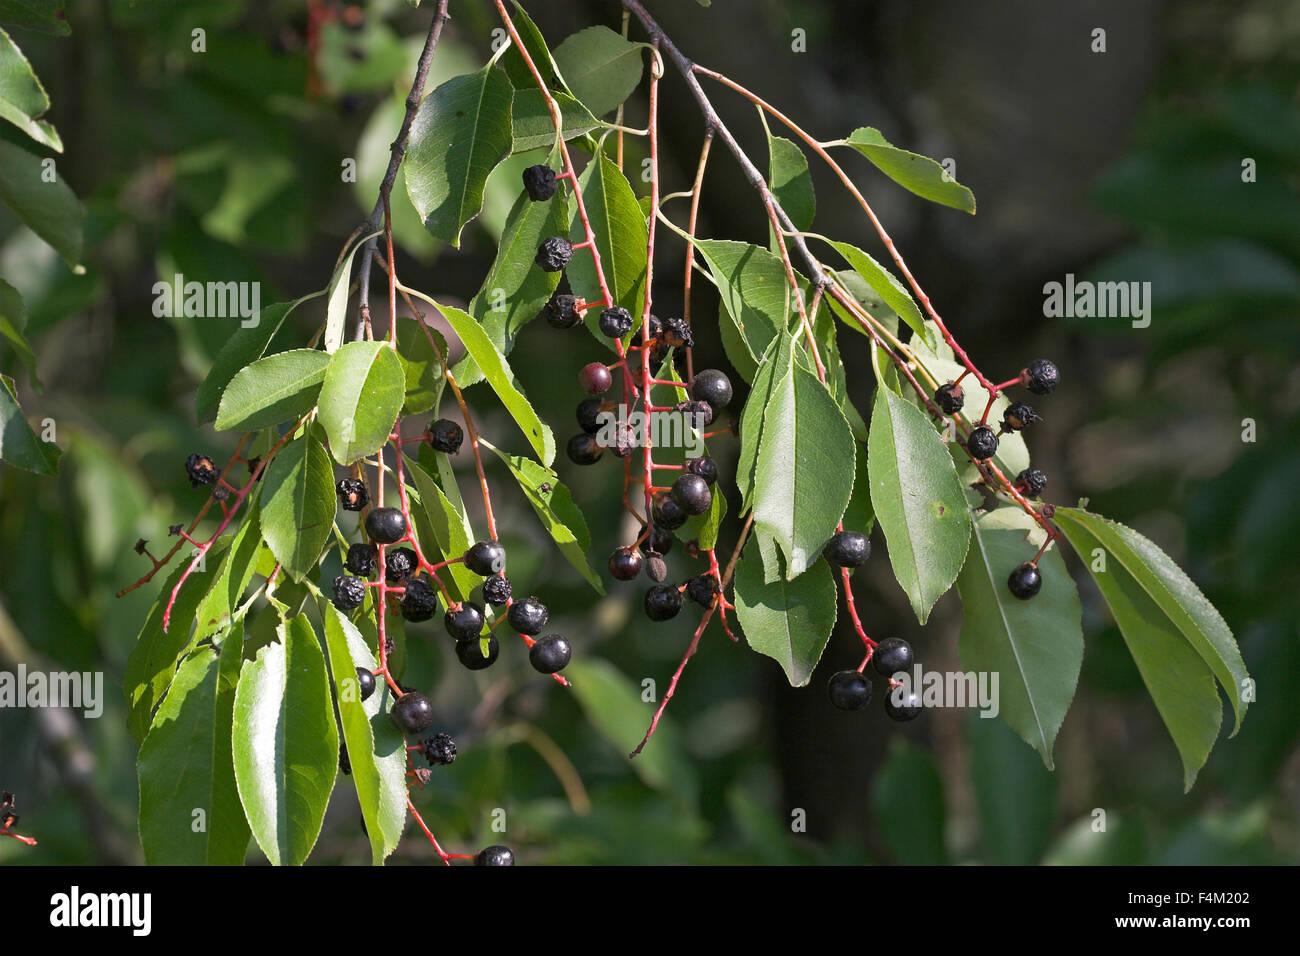 American Bird Cherry, Black Cherry, fruit, Späte Traubenkirsche, Früchte, Trauben-Kirsche, Prunus serotina, Cerisier tardif Stock Photo